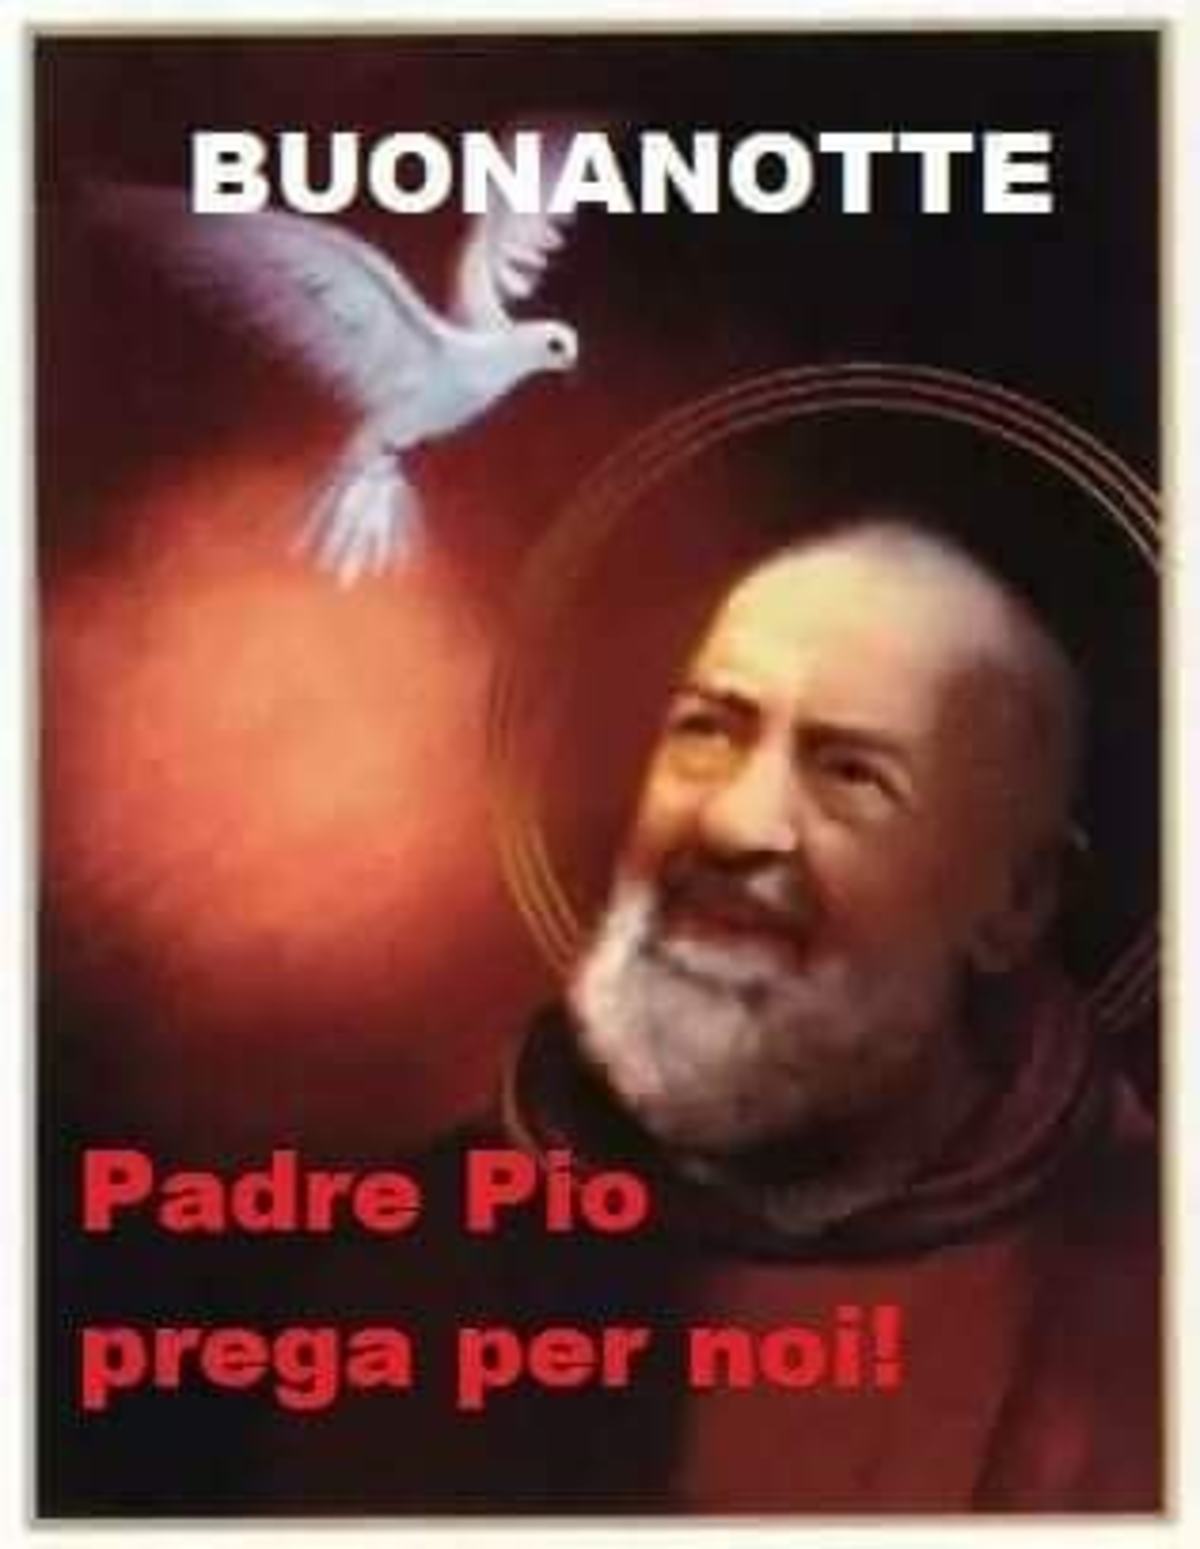 Buonanotte Padre Pio prega per noi